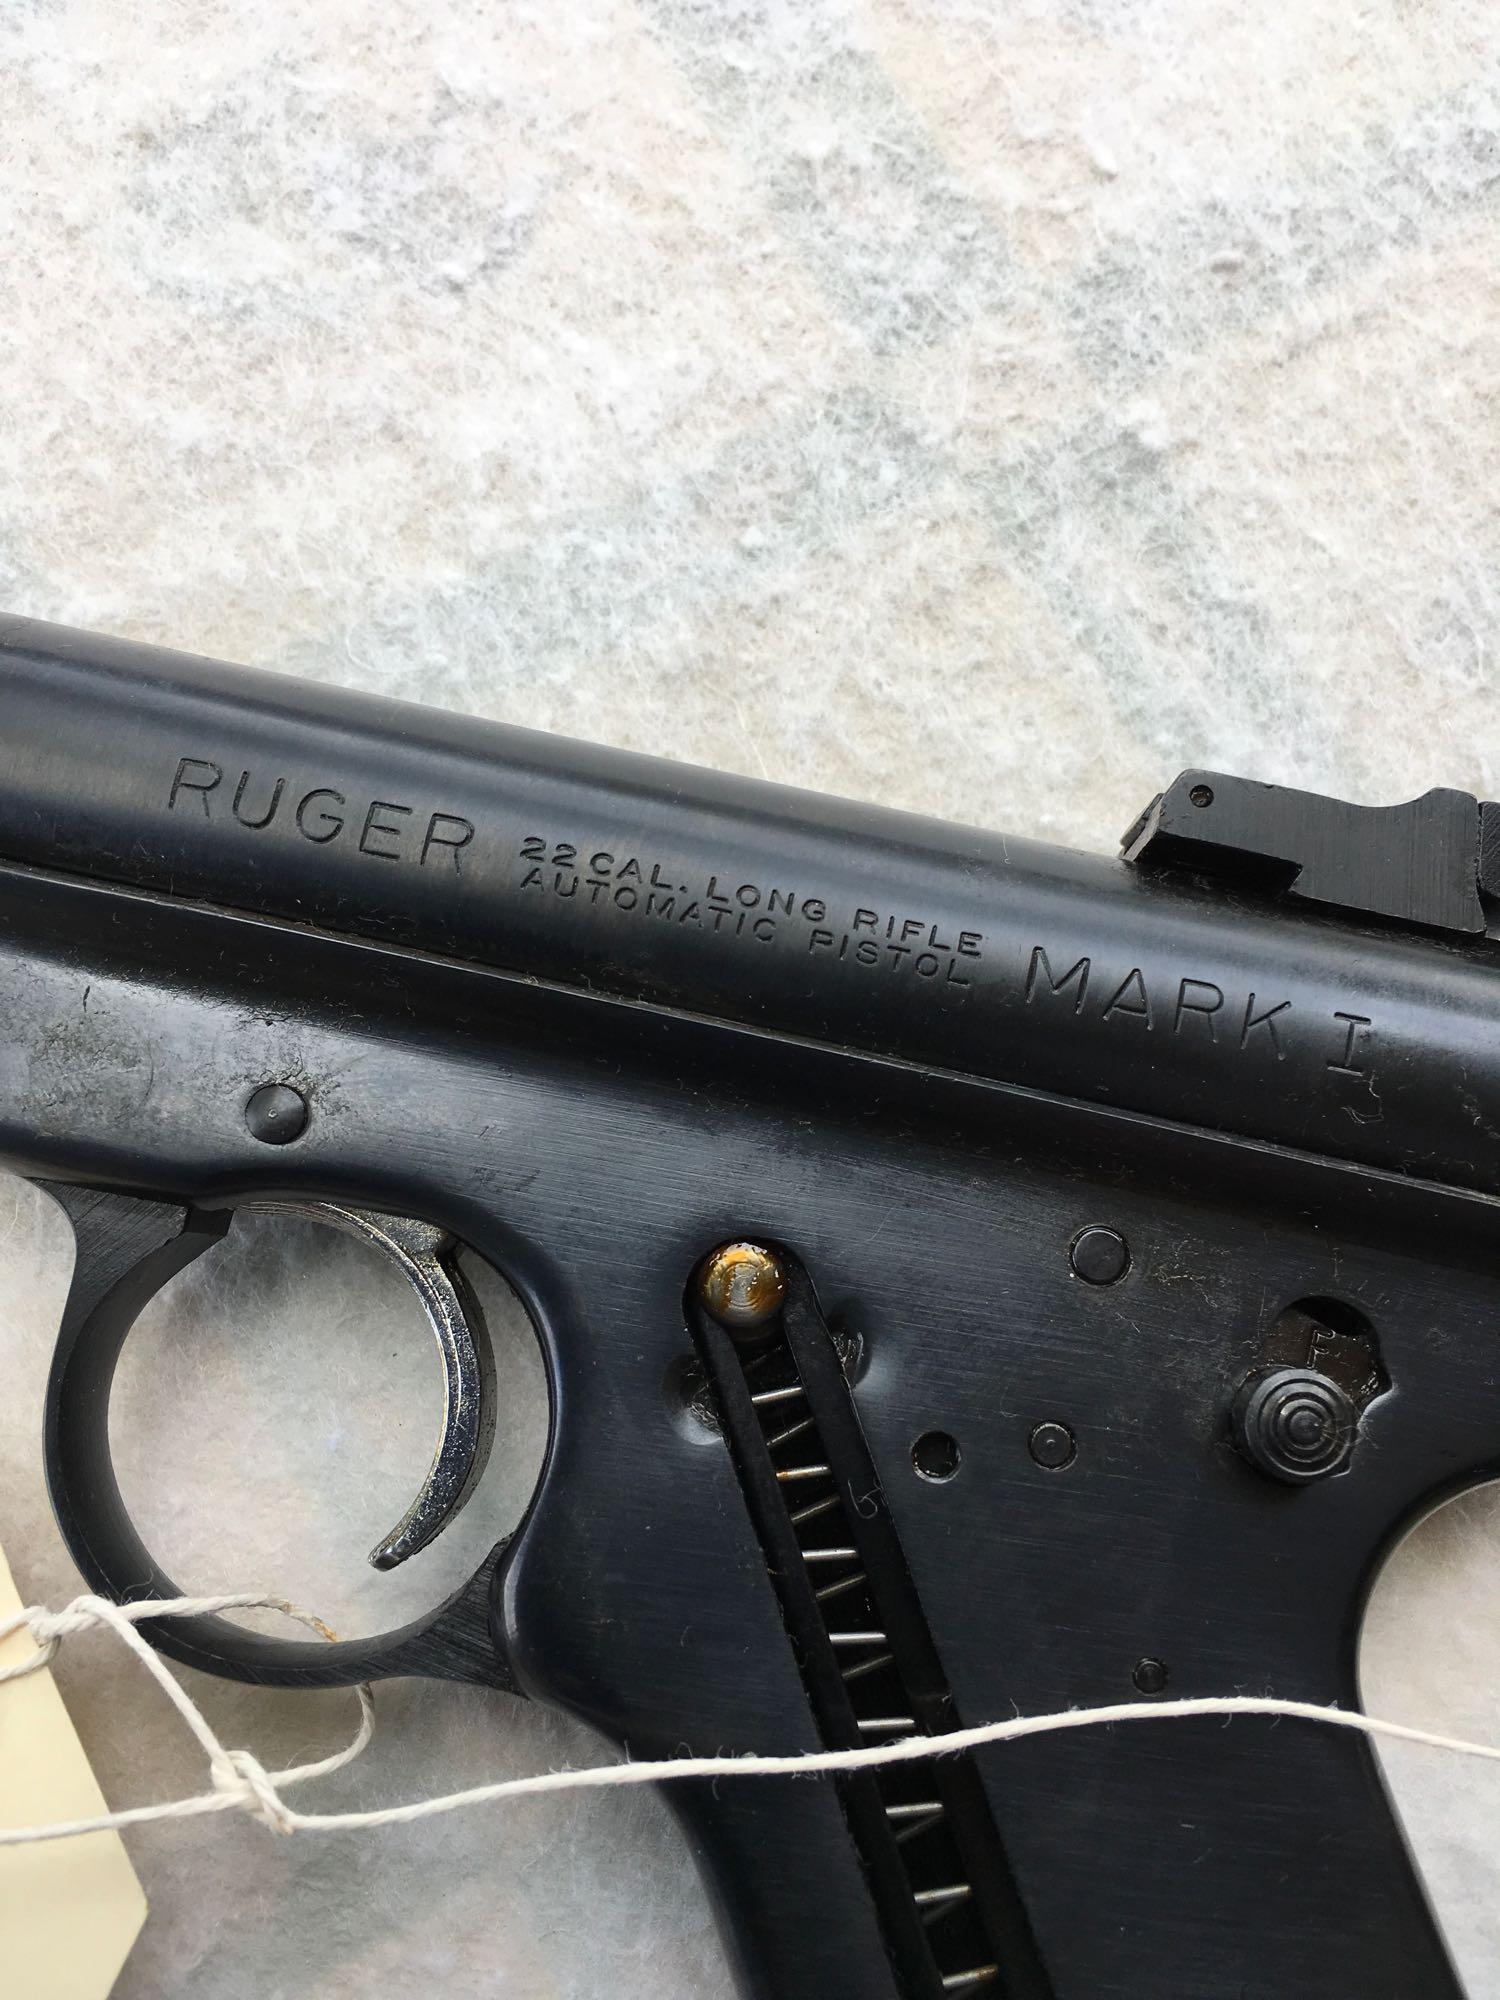 Ruger Mark I Target Model .22 caliber LR Ser.13-54397   " NOT FOR SALE IN CALIFORNIA "